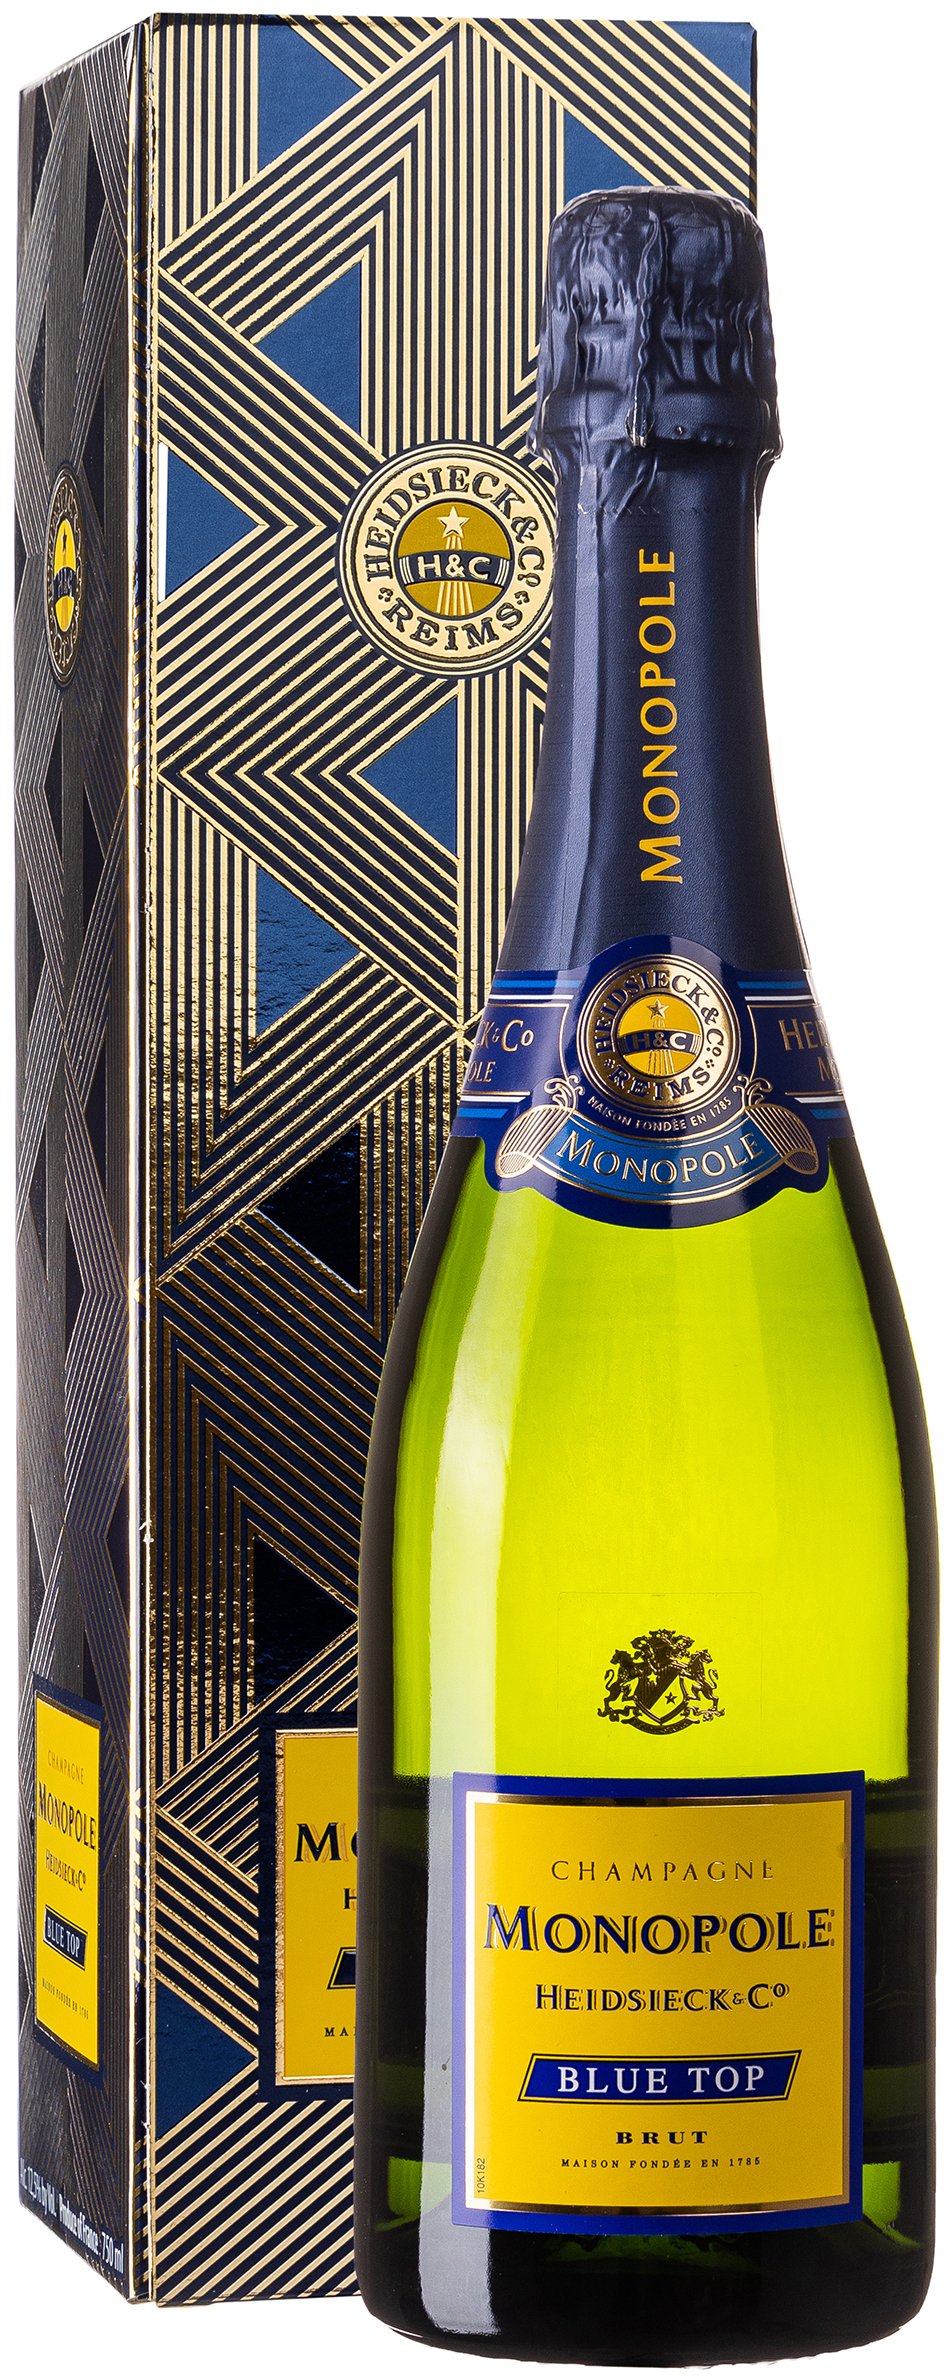 Champagne Monopole Heidsieck & C° Blue Top 12,5% vol. 0,75L